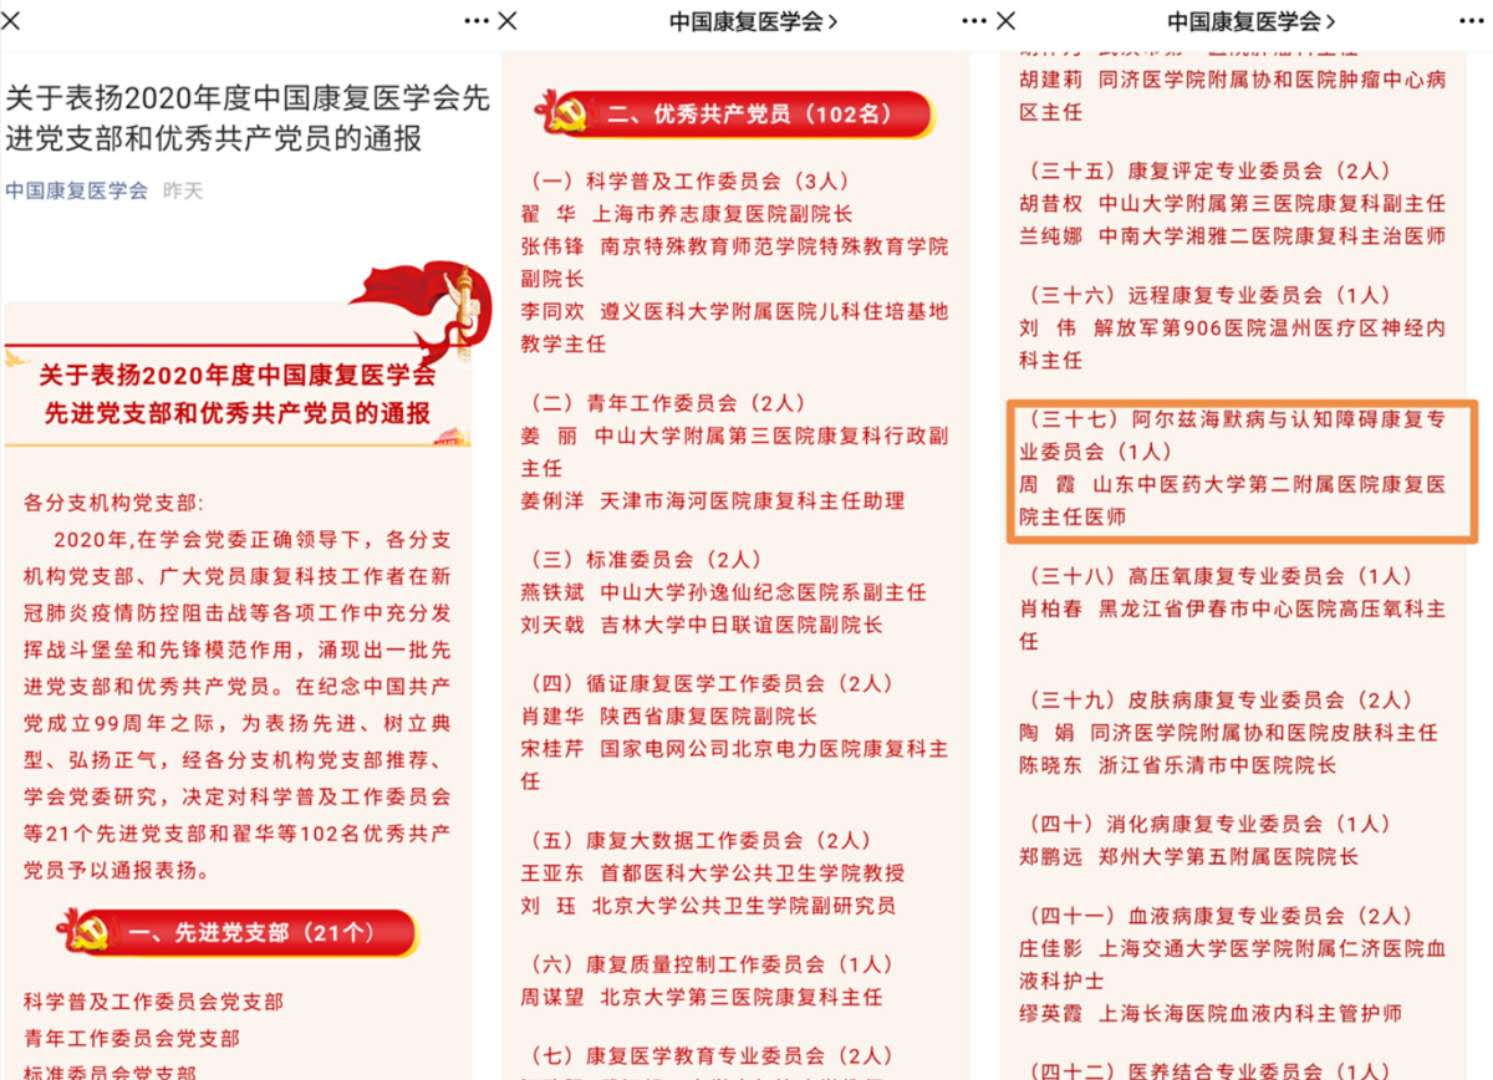 我院康复医学科www.340.com周霞被评为2020年度中国康复医学会优秀共产党员